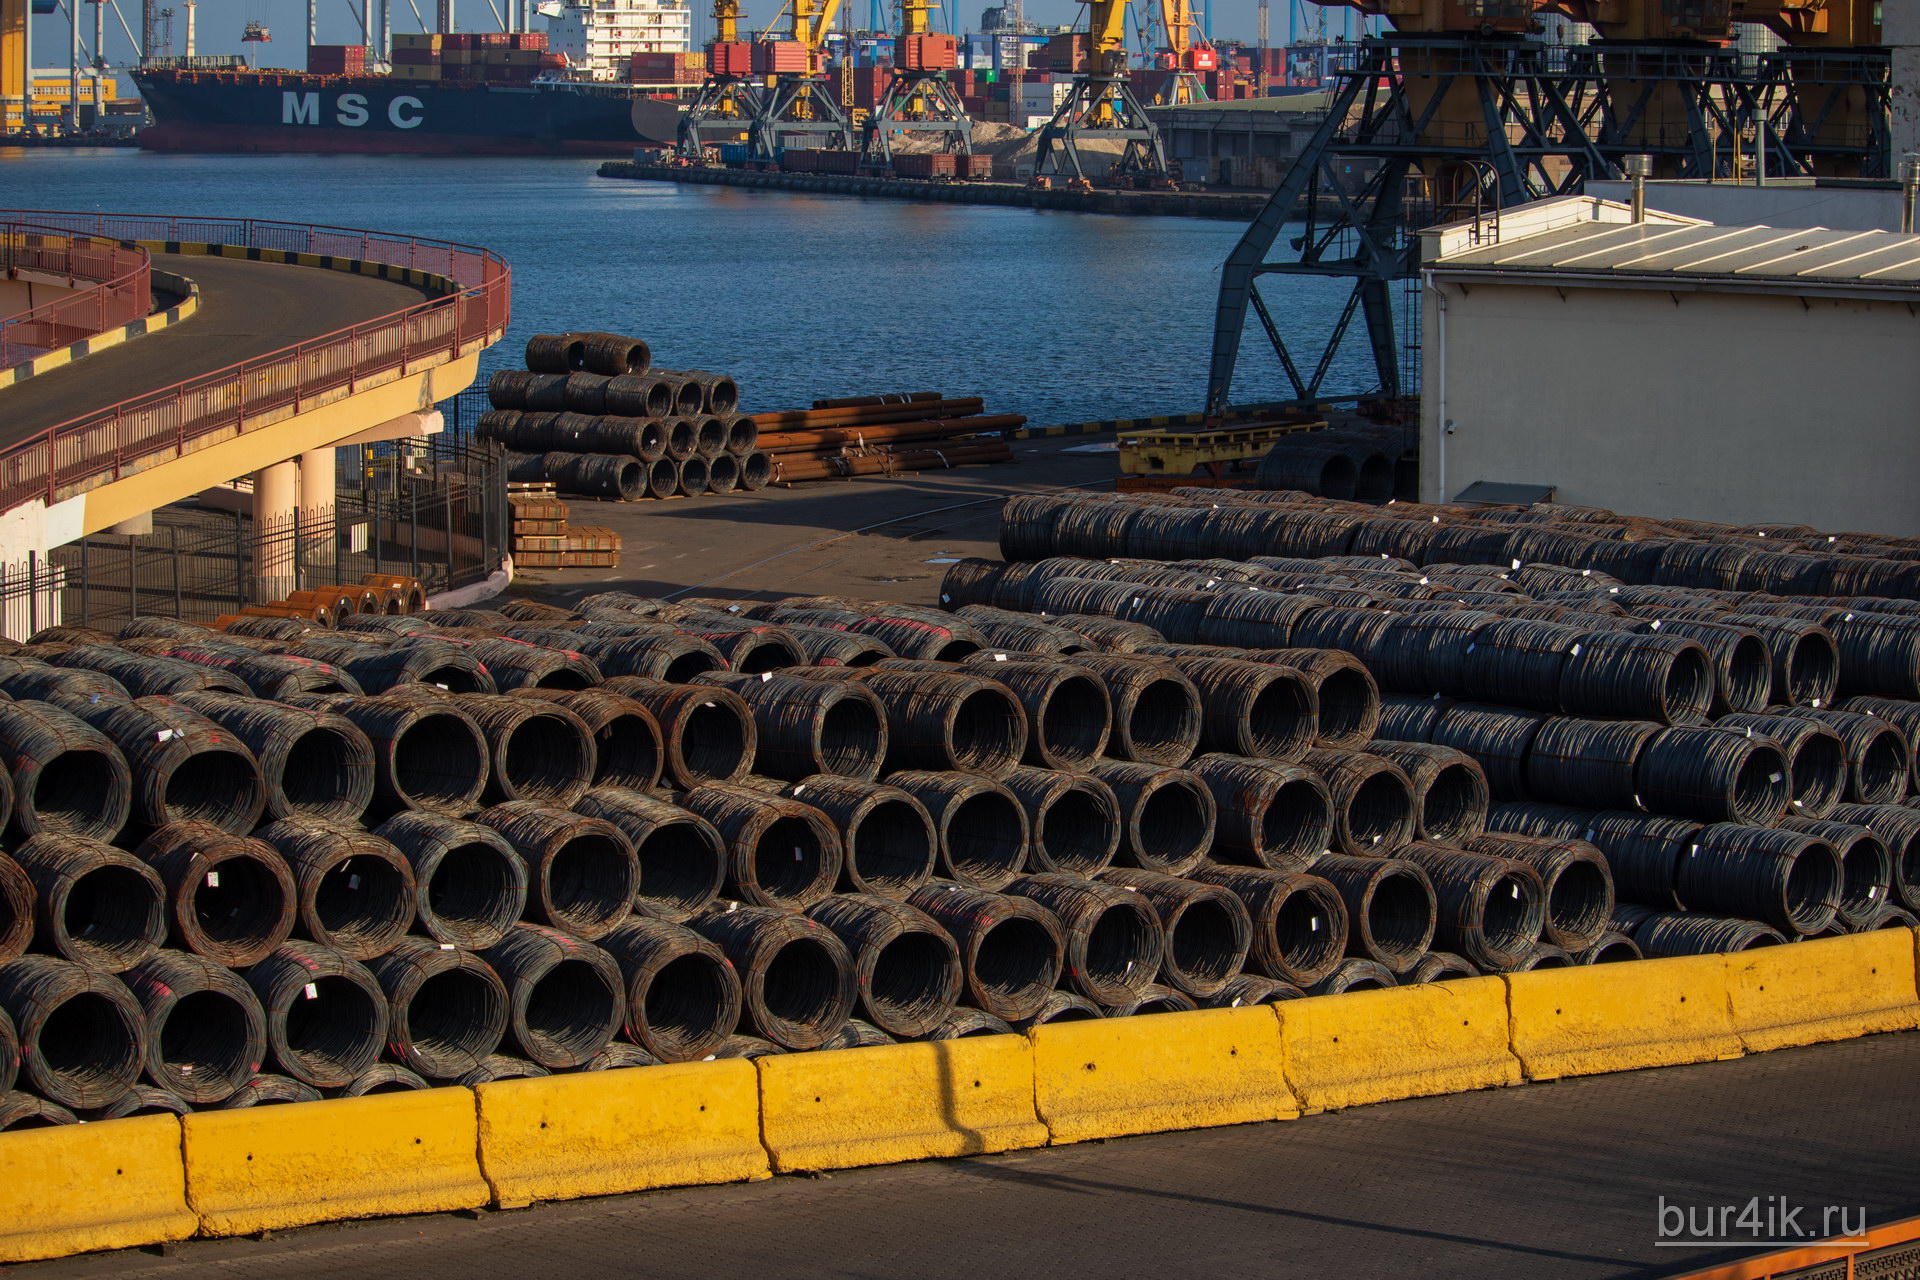 Горы металлической проволоки в бухтах ждут отправки на судне по морю в порту